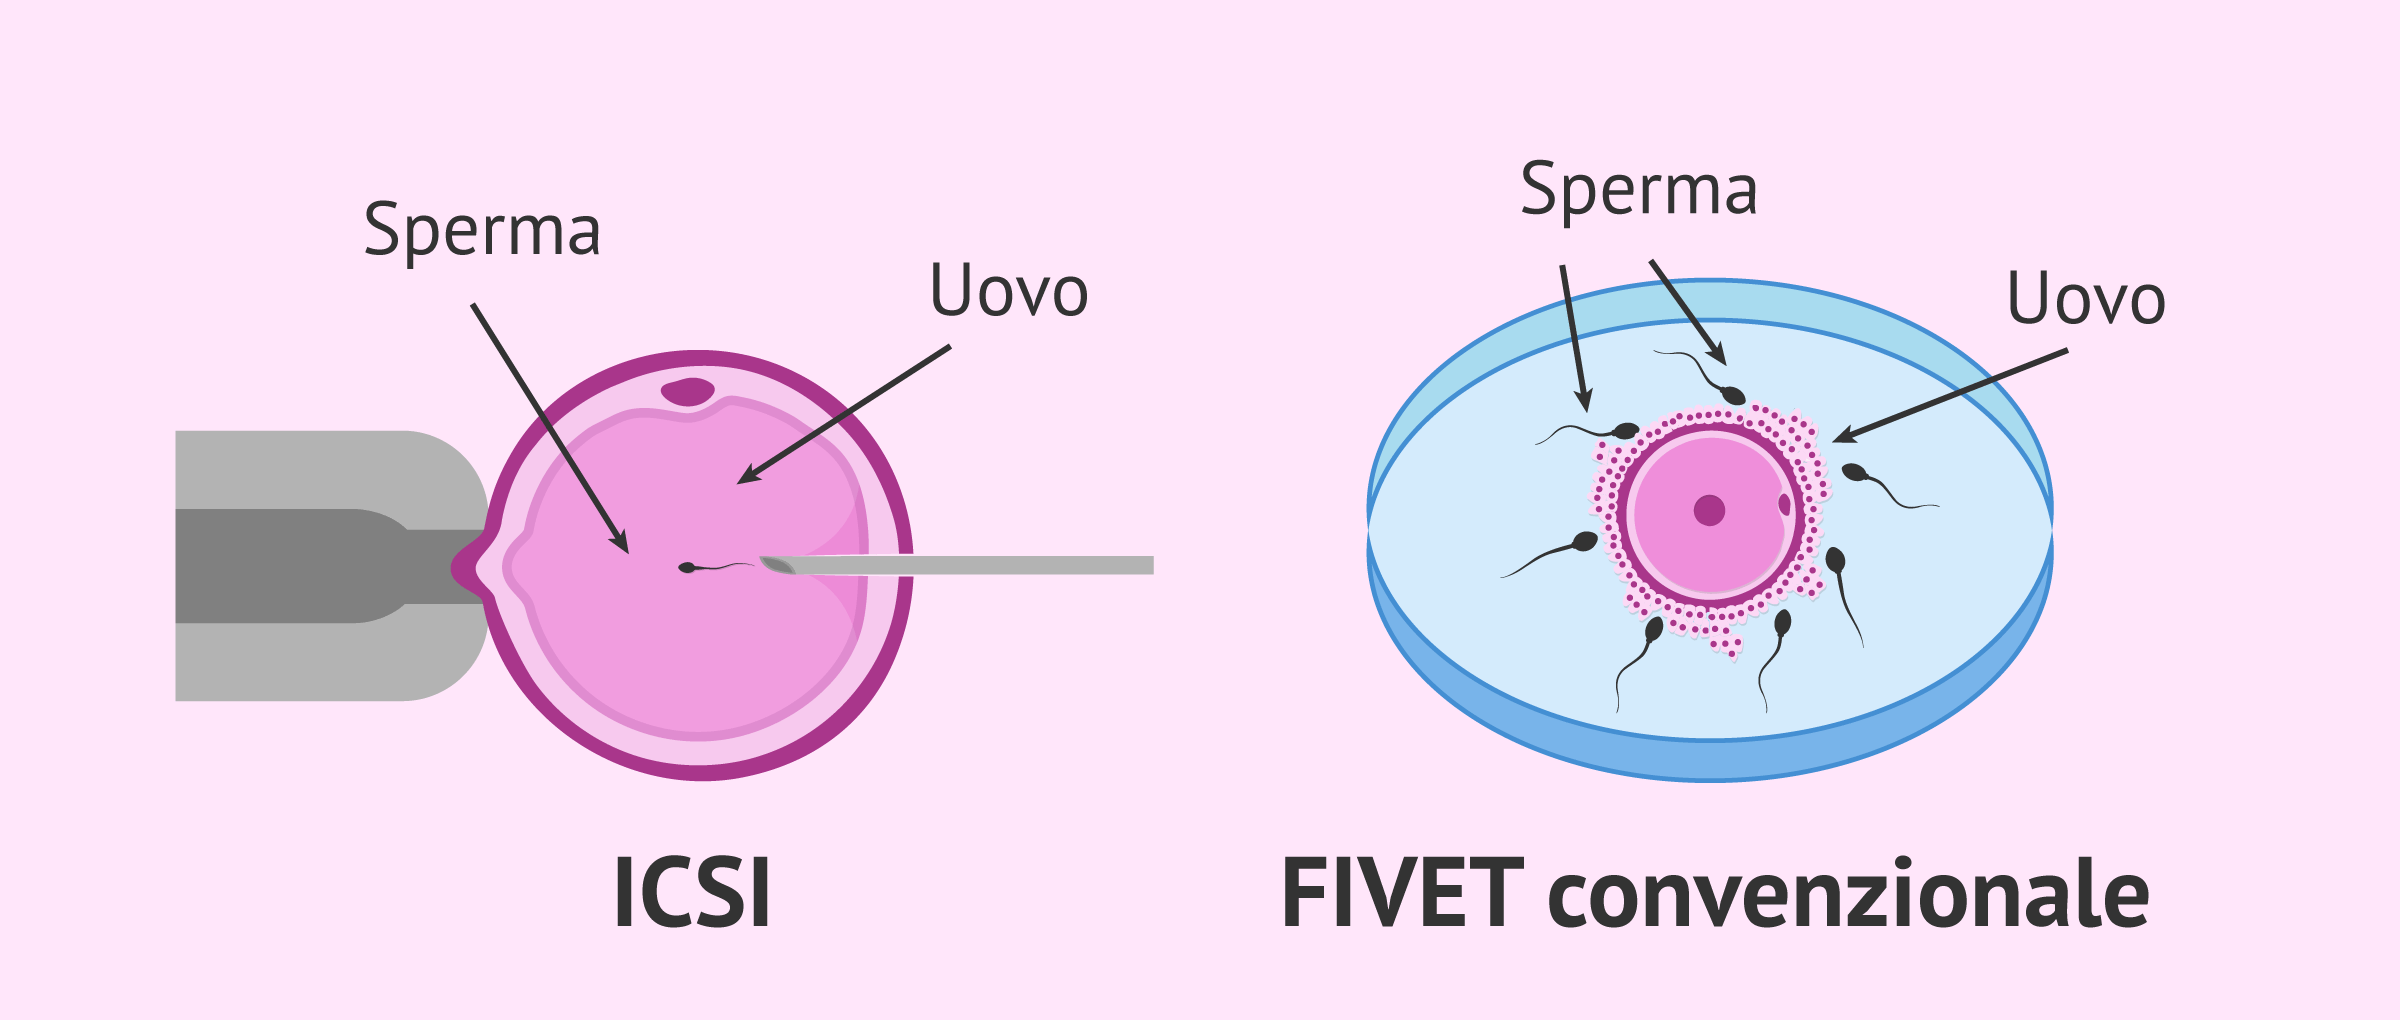 Confronto tra FIVET convenzionale e ICSI